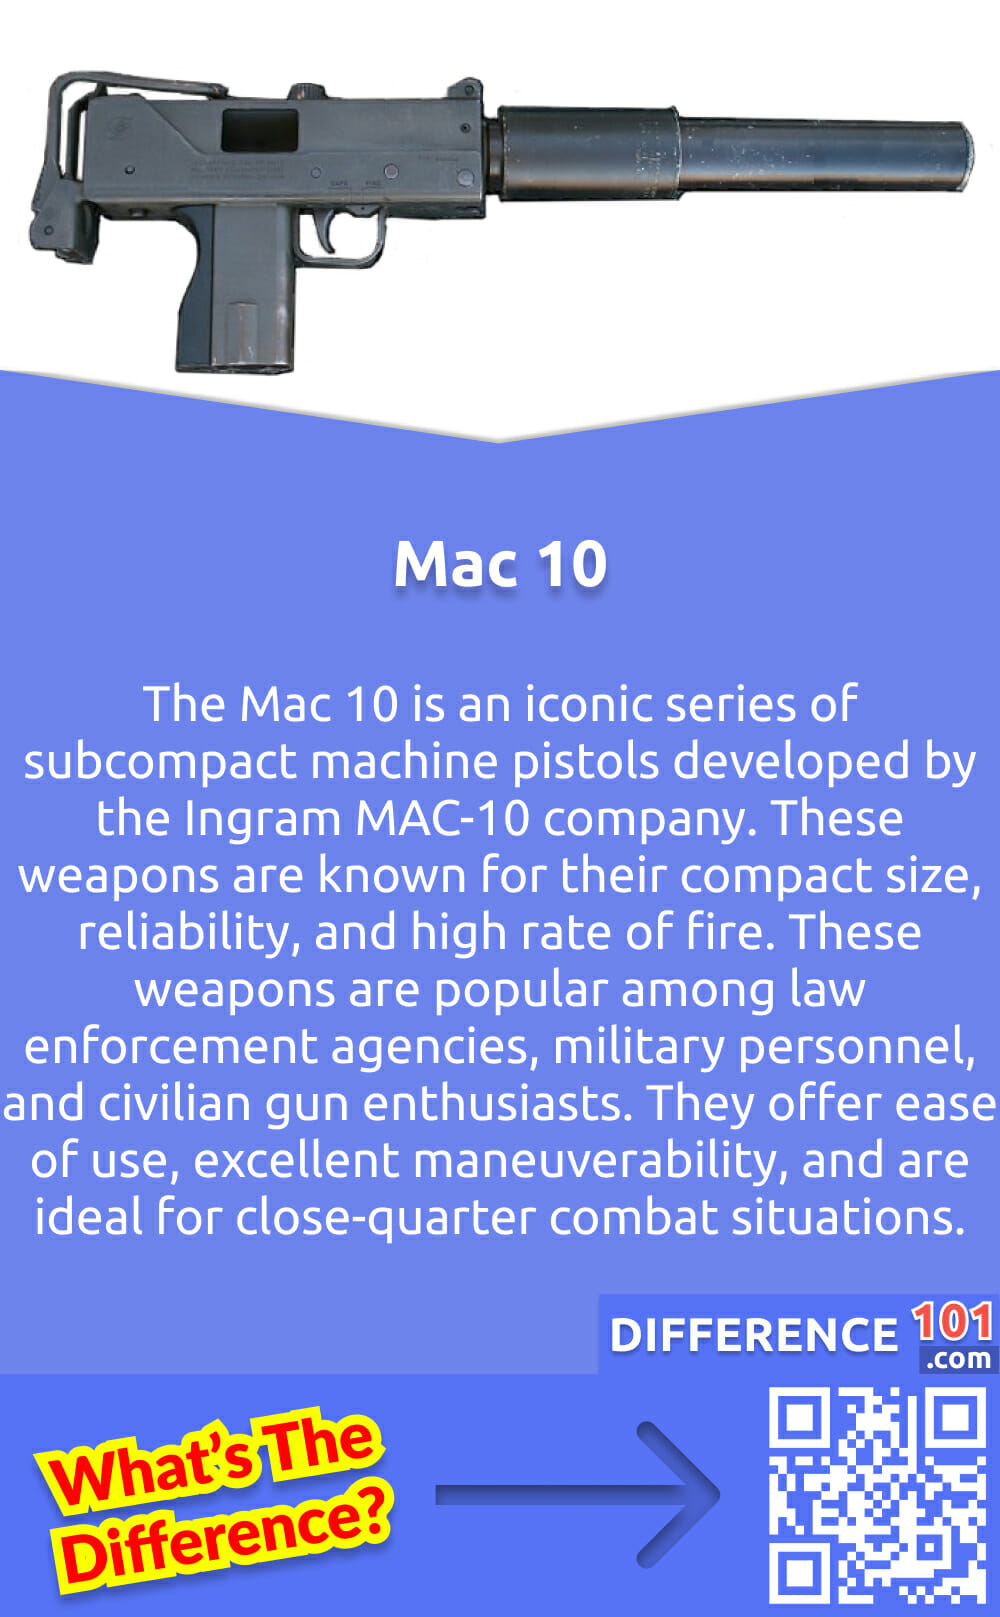 Was ist die Mac 10? Die Mac 10 ist eine kultige Serie von subkompakten Maschinenpistolen, die von der Firma Ingram MAC-10 entwickelt wurde. Diese Waffen sind für ihre kompakte Größe, Zuverlässigkeit und hohe Feuerrate bekannt. Die Mac-10-Serie besteht aus einer Reihe von Waffen, die sich in Größe, Lauflänge und Kalibern unterscheiden. Diese Waffen sind bei Strafverfolgungsbehörden, Militärangehörigen und zivilen Waffenliebhabern beliebt. Sie zeichnen sich durch einfache Handhabung und hervorragende Manövrierfähigkeit aus und sind ideal für den Nahkampf. Trotz ihrer Beliebtheit stellt die kompakte Bauweise der Mac 10 eine große Herausforderung dar, da sie häufig gewartet und repariert werden muss. Insgesamt ist die Mac 10 eine innovative und effiziente Waffe, die sich in der Welt der subkompakten Maschinenpistolen einen Namen gemacht hat.